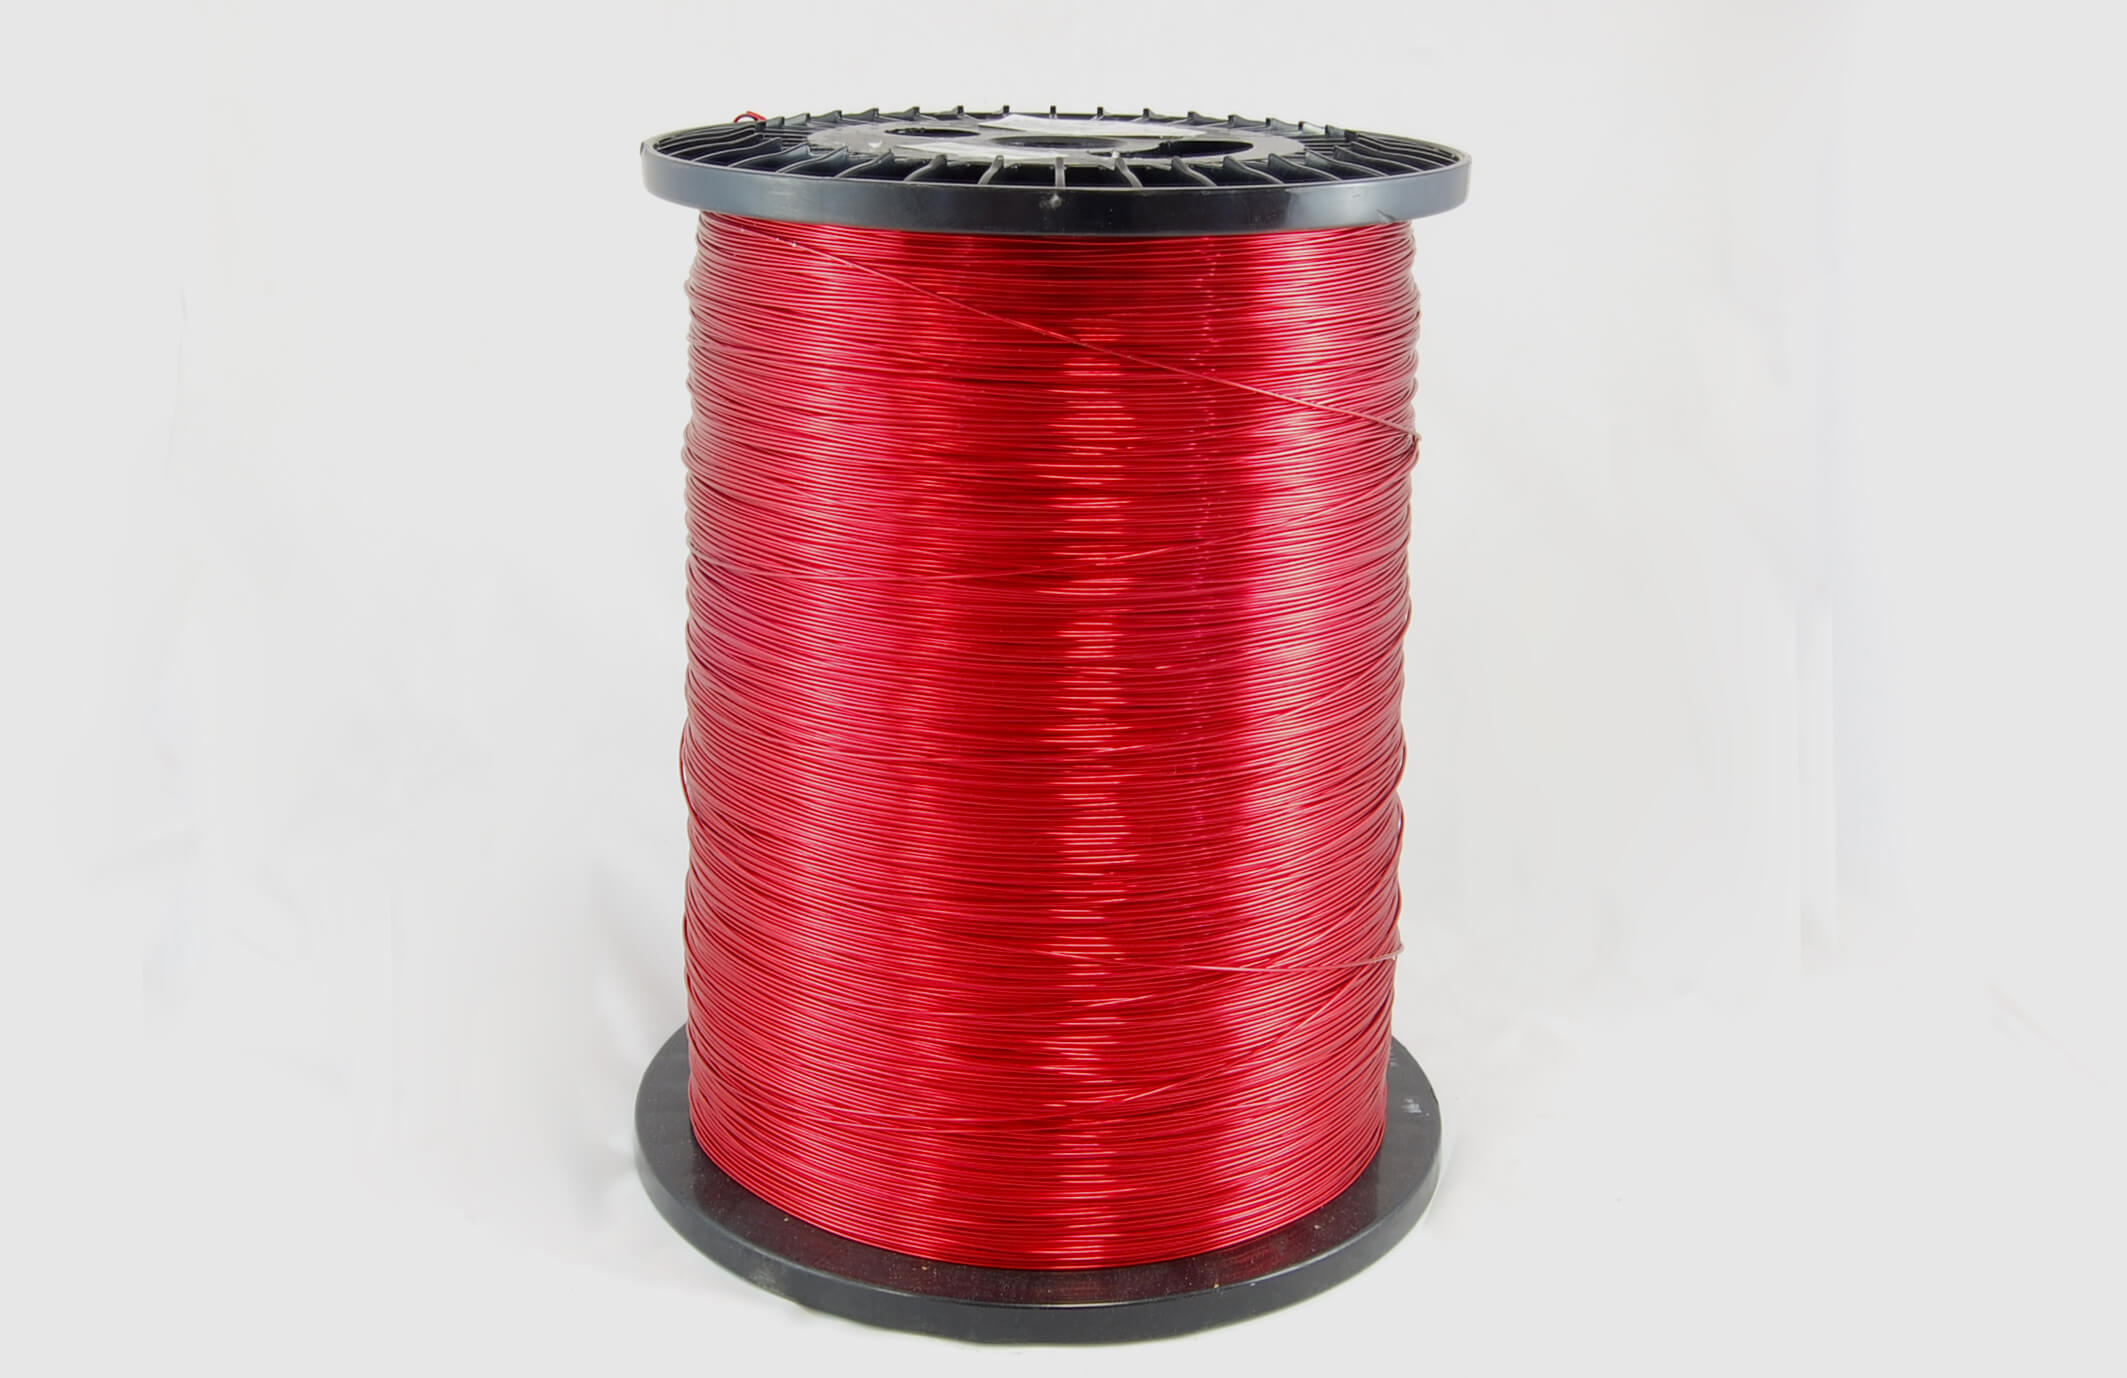 #31 Heavy Nysol  Round HNSR MW 80 Copper Magnet Wire 155°C, red, 85 LB box (average wght.)